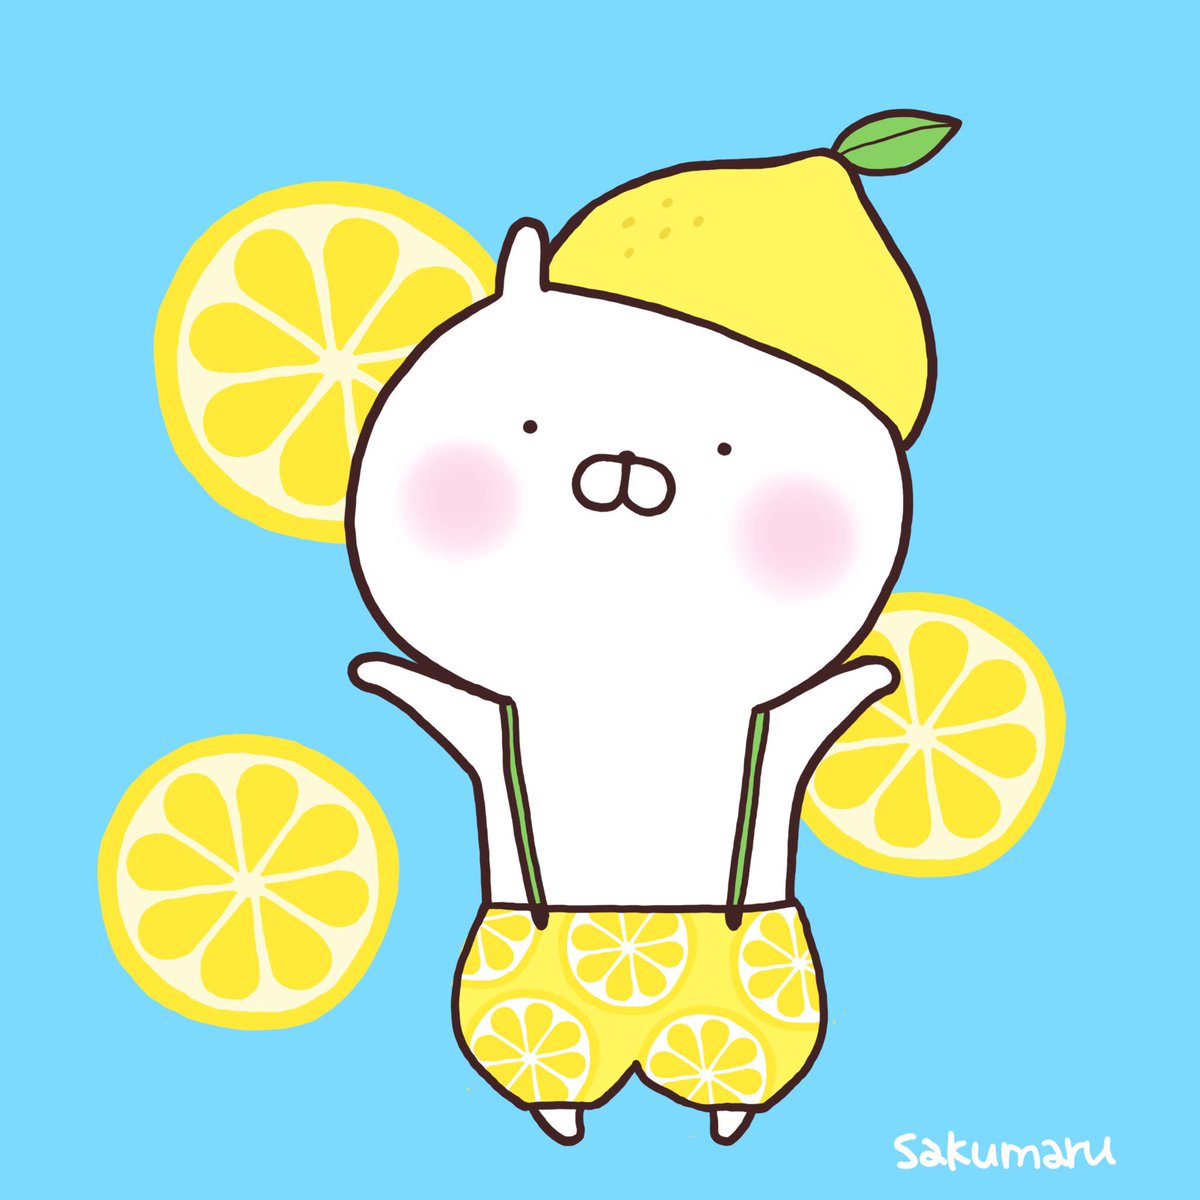 Sakumaru うさまるといっしょ れもん柄かわいい レモンの日